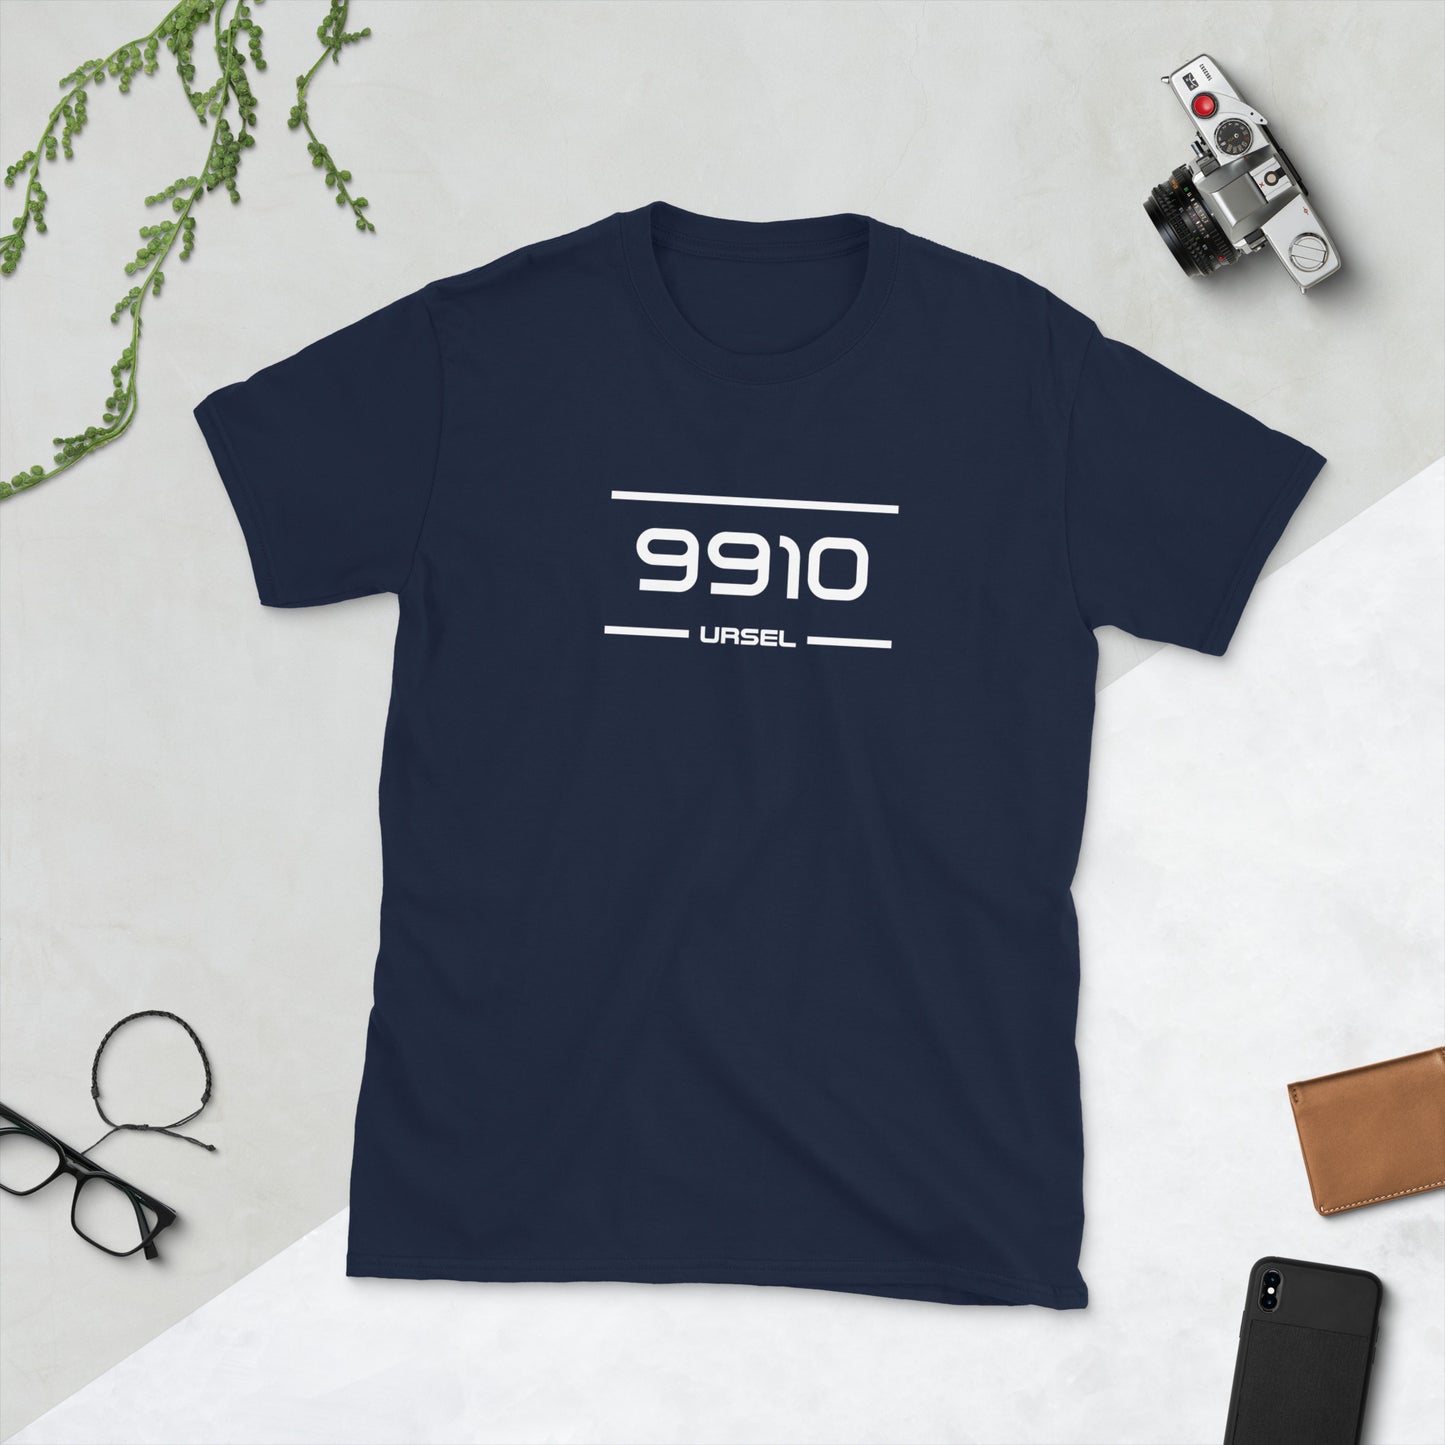 Tshirt - 9910 - Ursel